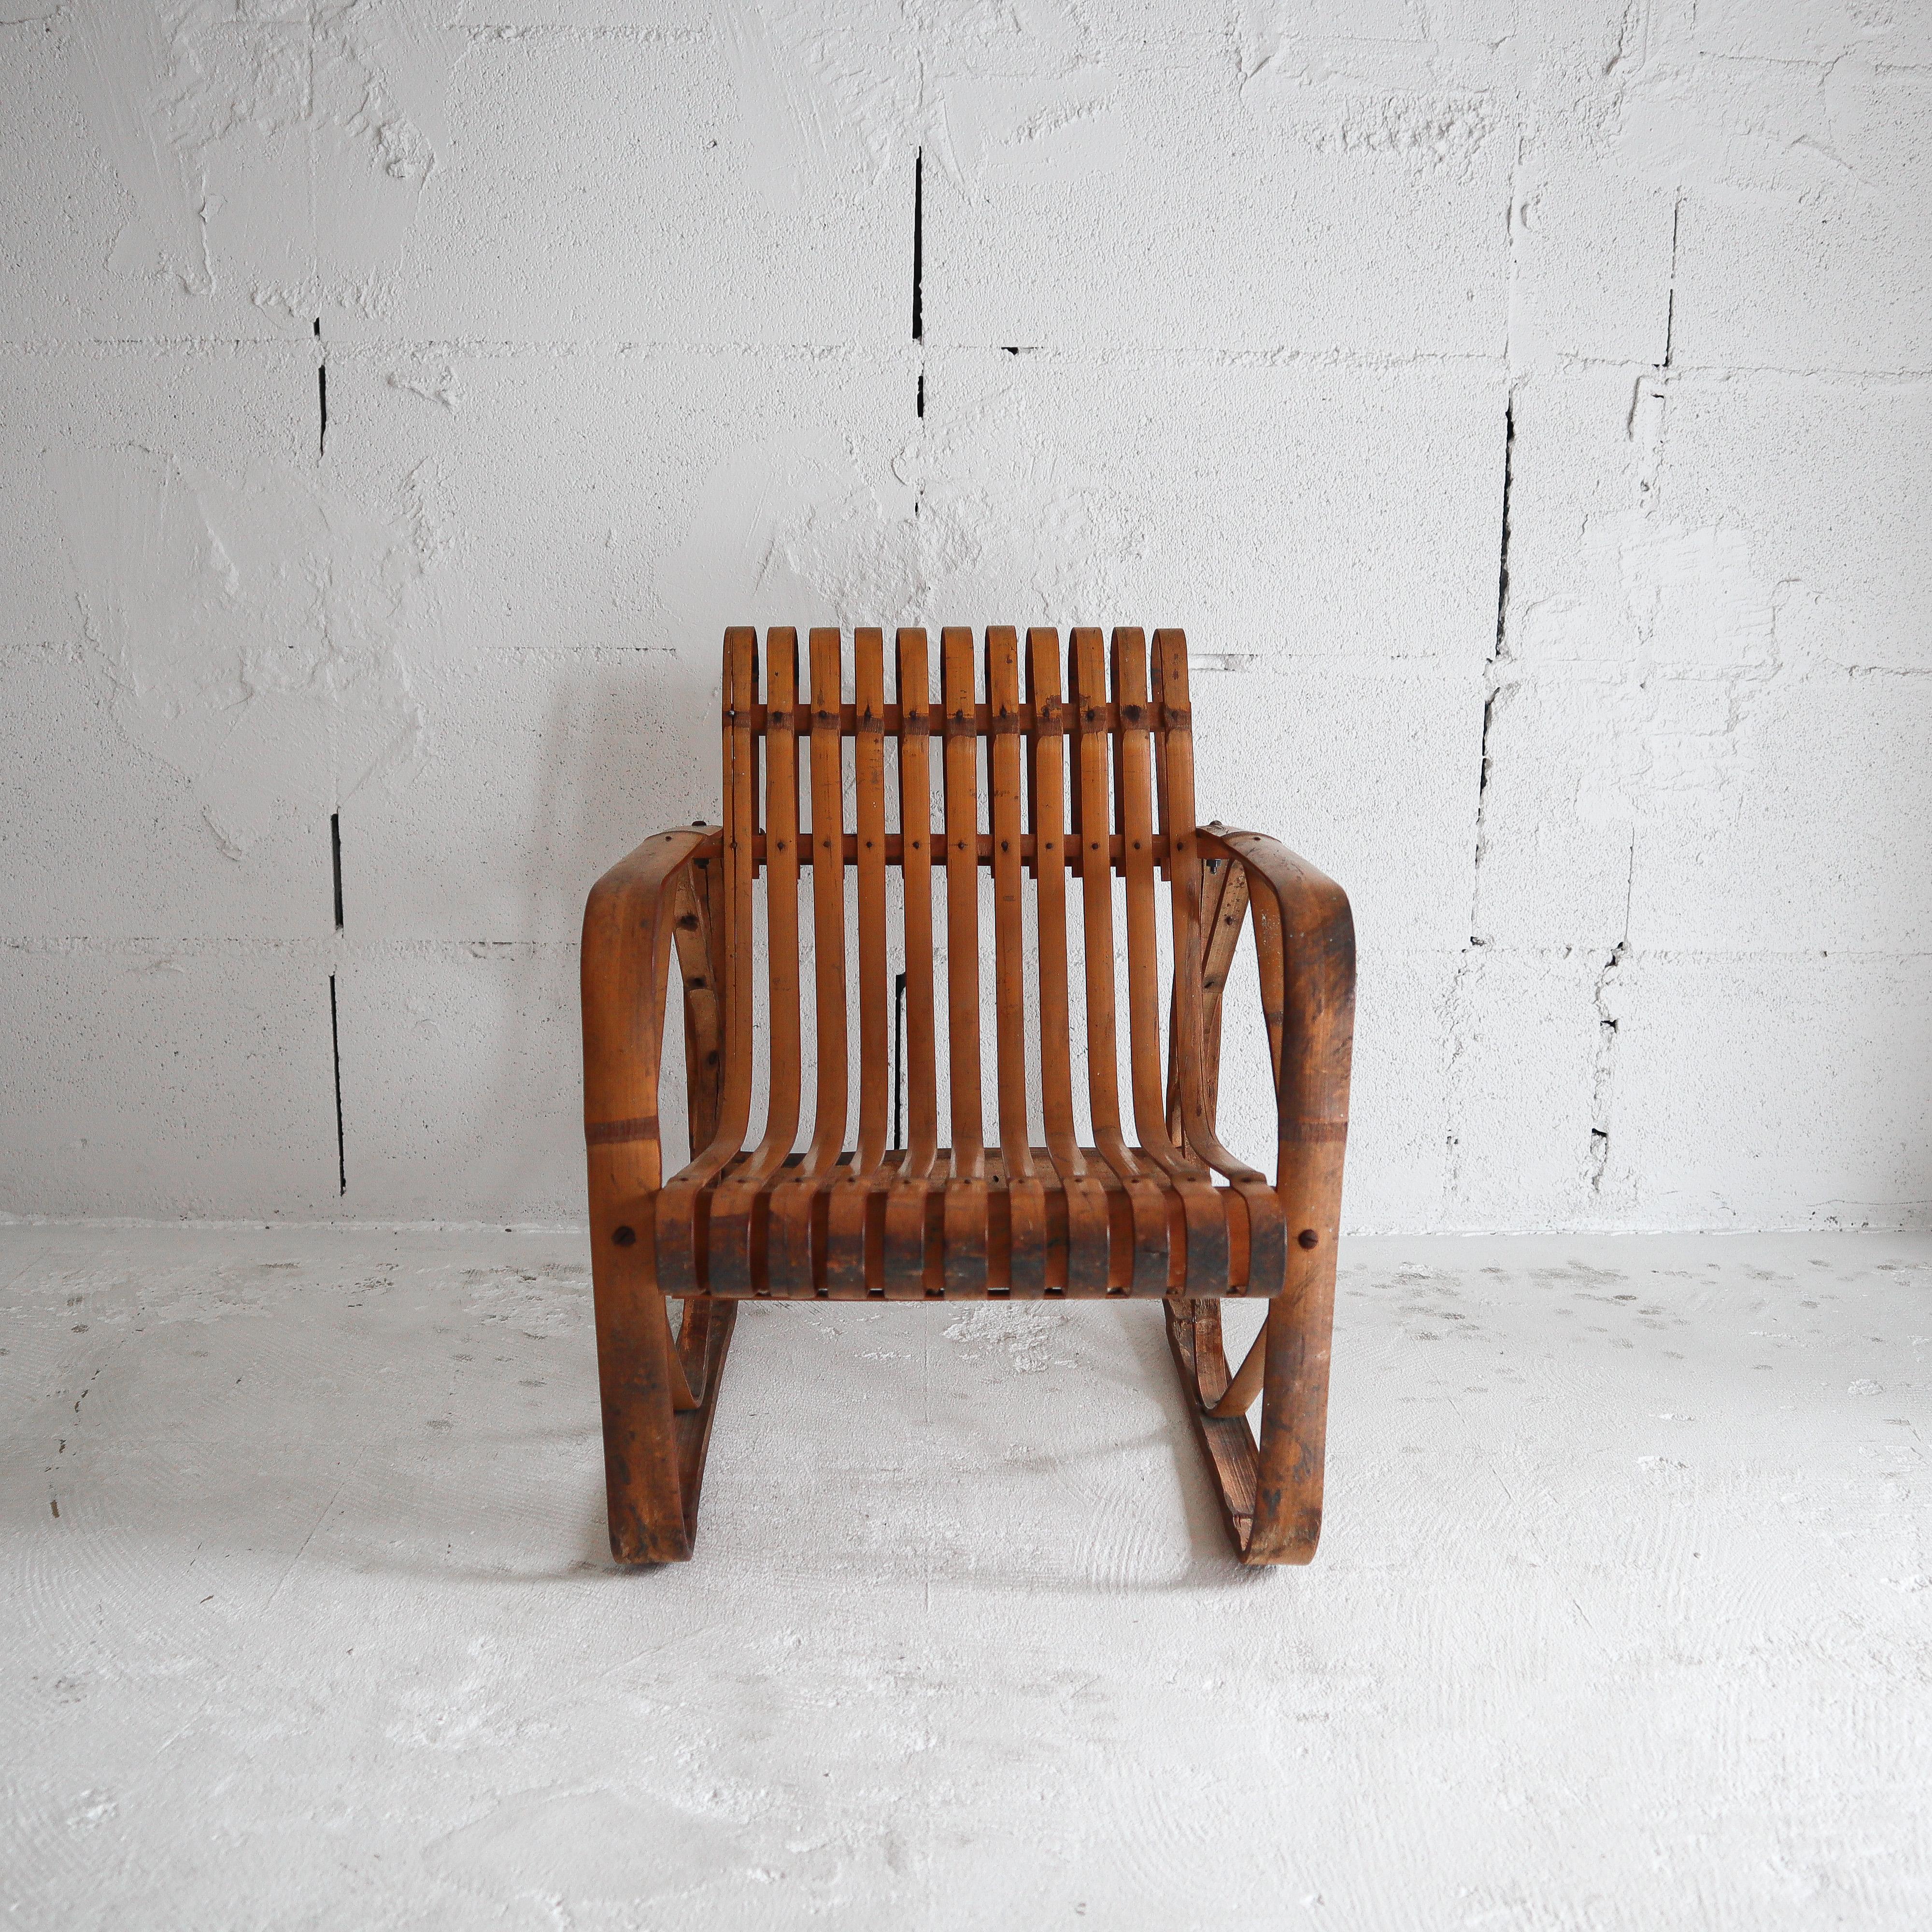 Cette chaise extrêmement rare a été fabriquée à la main au début des années 1900 par des artisans japonais qualifiés dans l'usine Shibayama de Nagoya, au Japon. Cette chaise a joué un rôle essentiel dans l'étude du design japonais par Charlotte